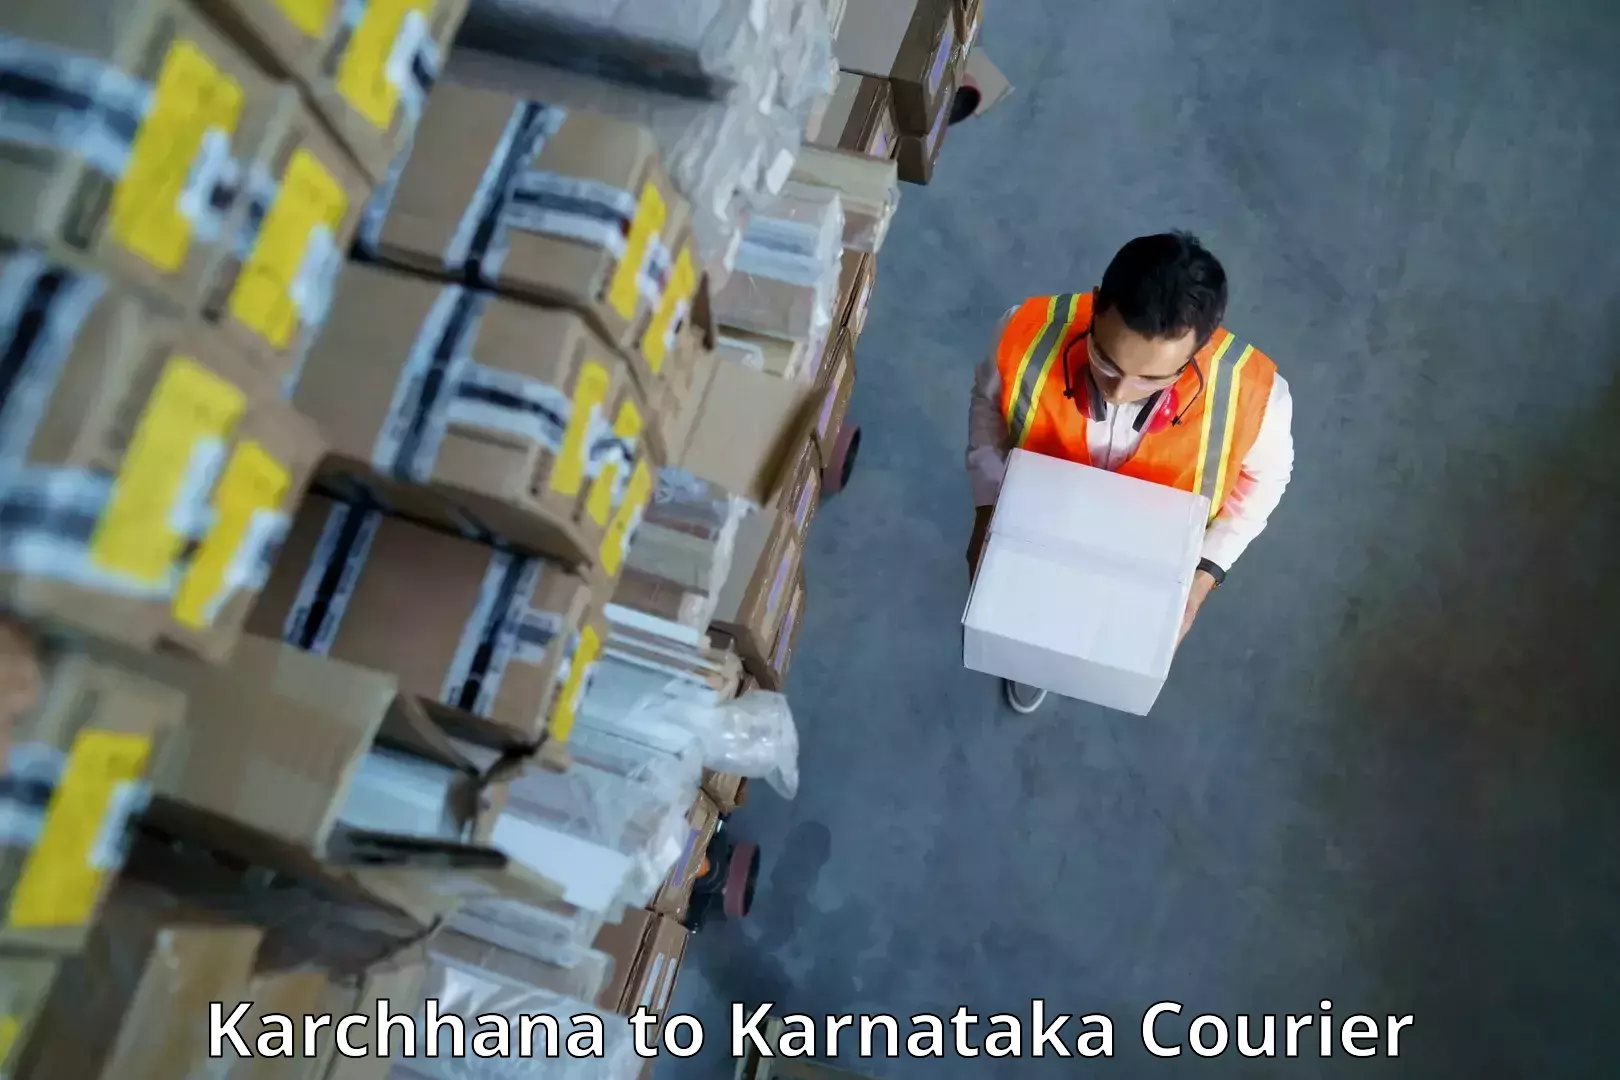 Professional courier handling Karchhana to Chikkanayakanahalli